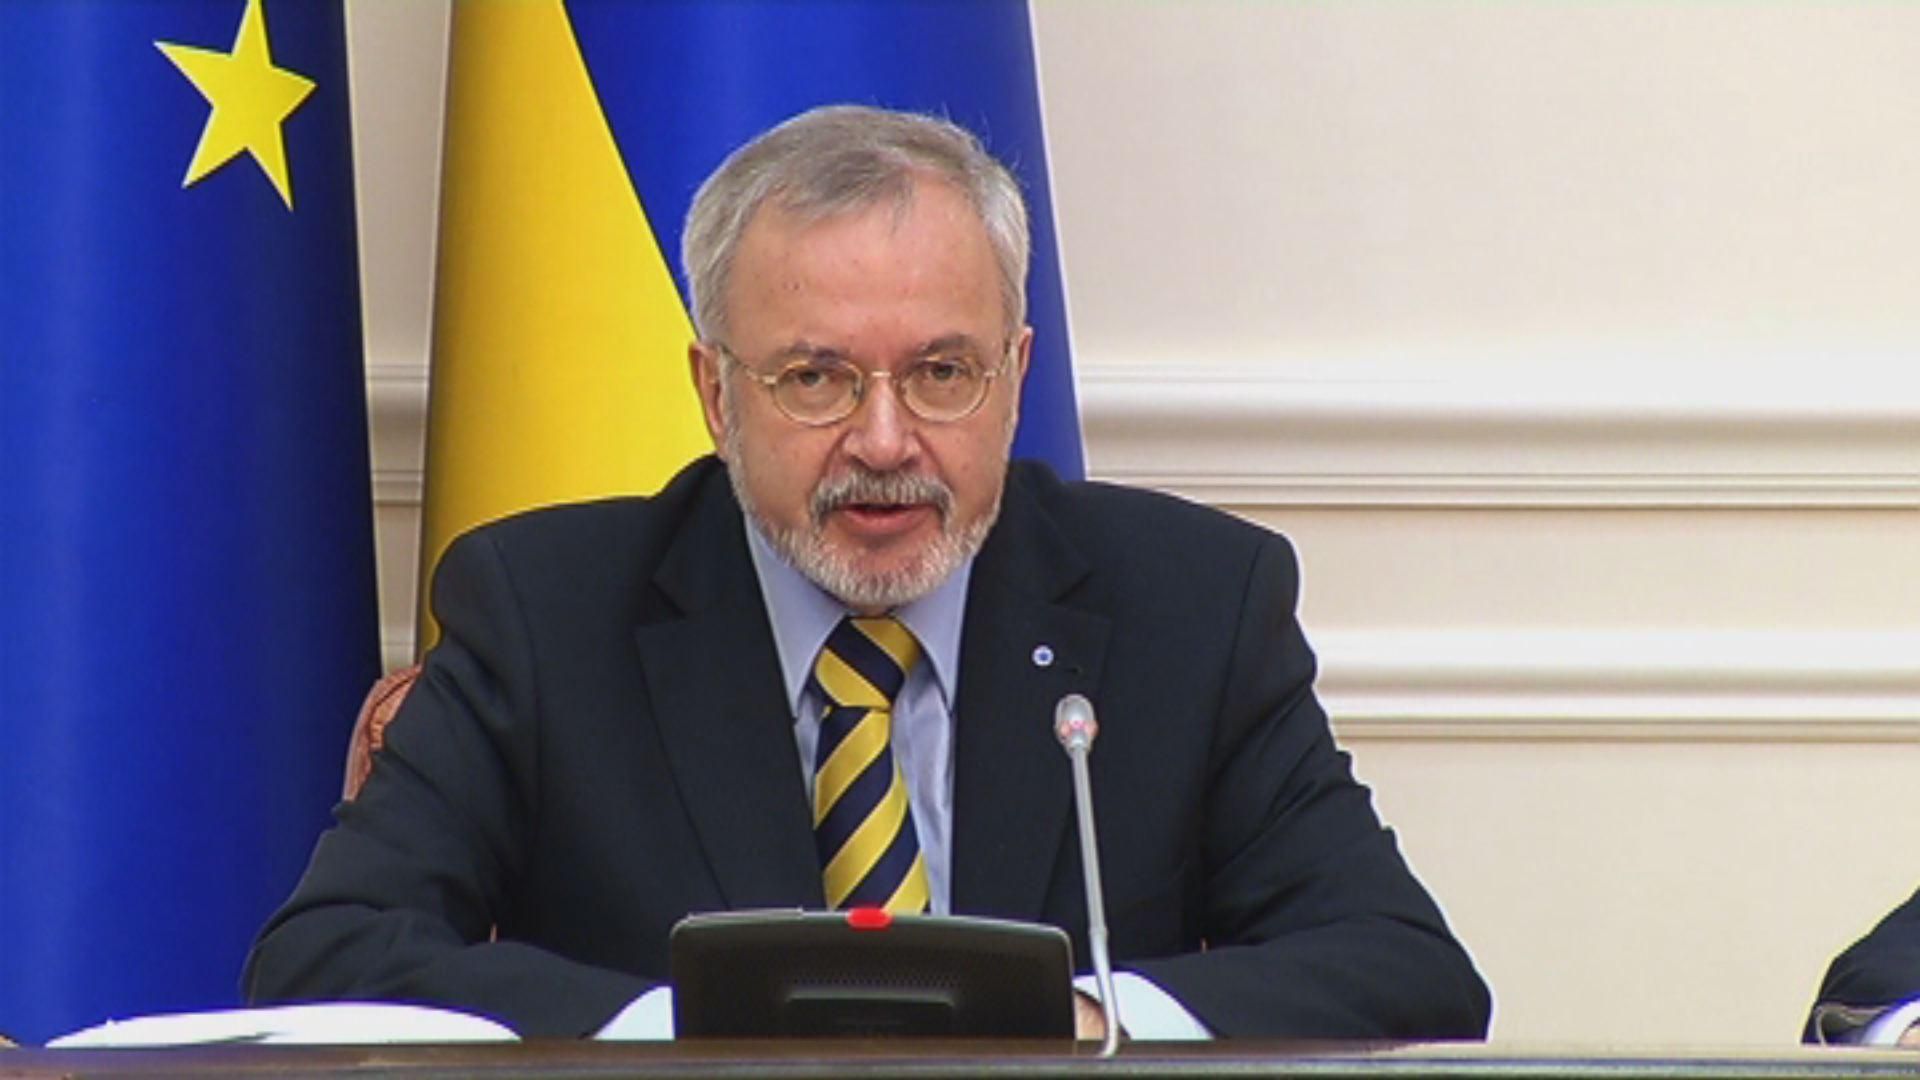 Мета проекту ЄІБ — модернізувати українську газотранспортну систему, — президент ЄІБ